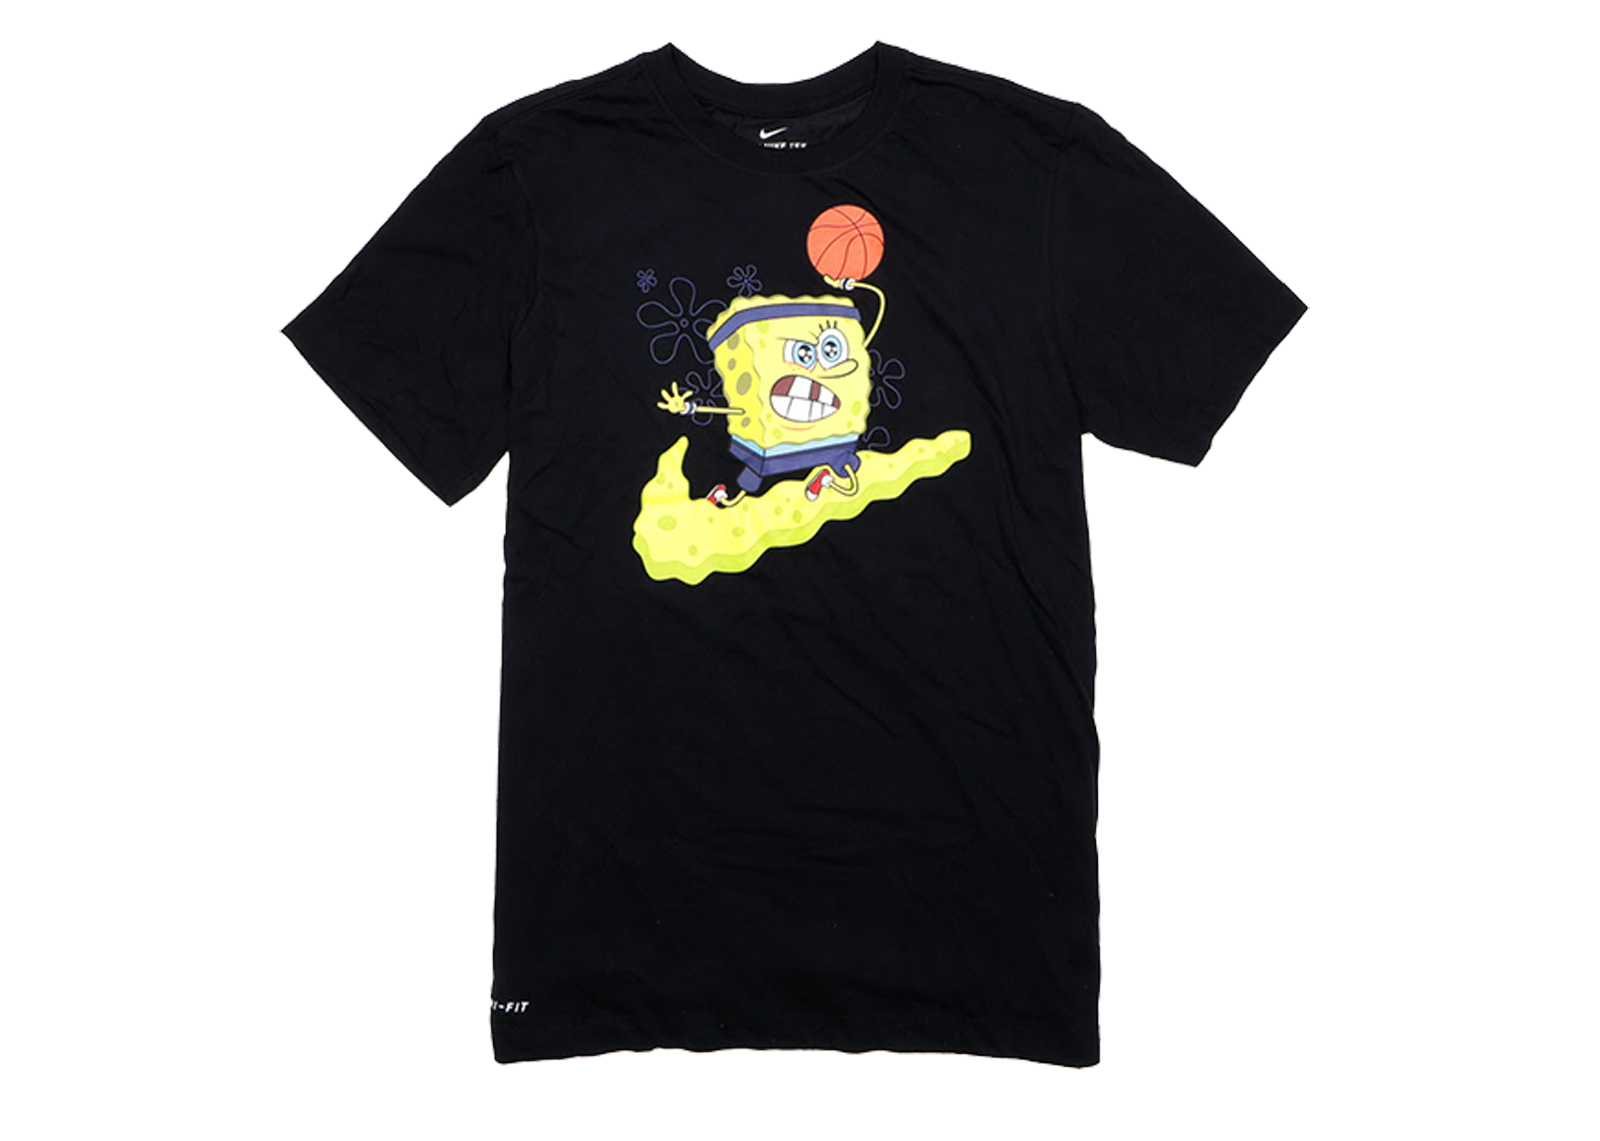 kyrie irving spongebob apparel